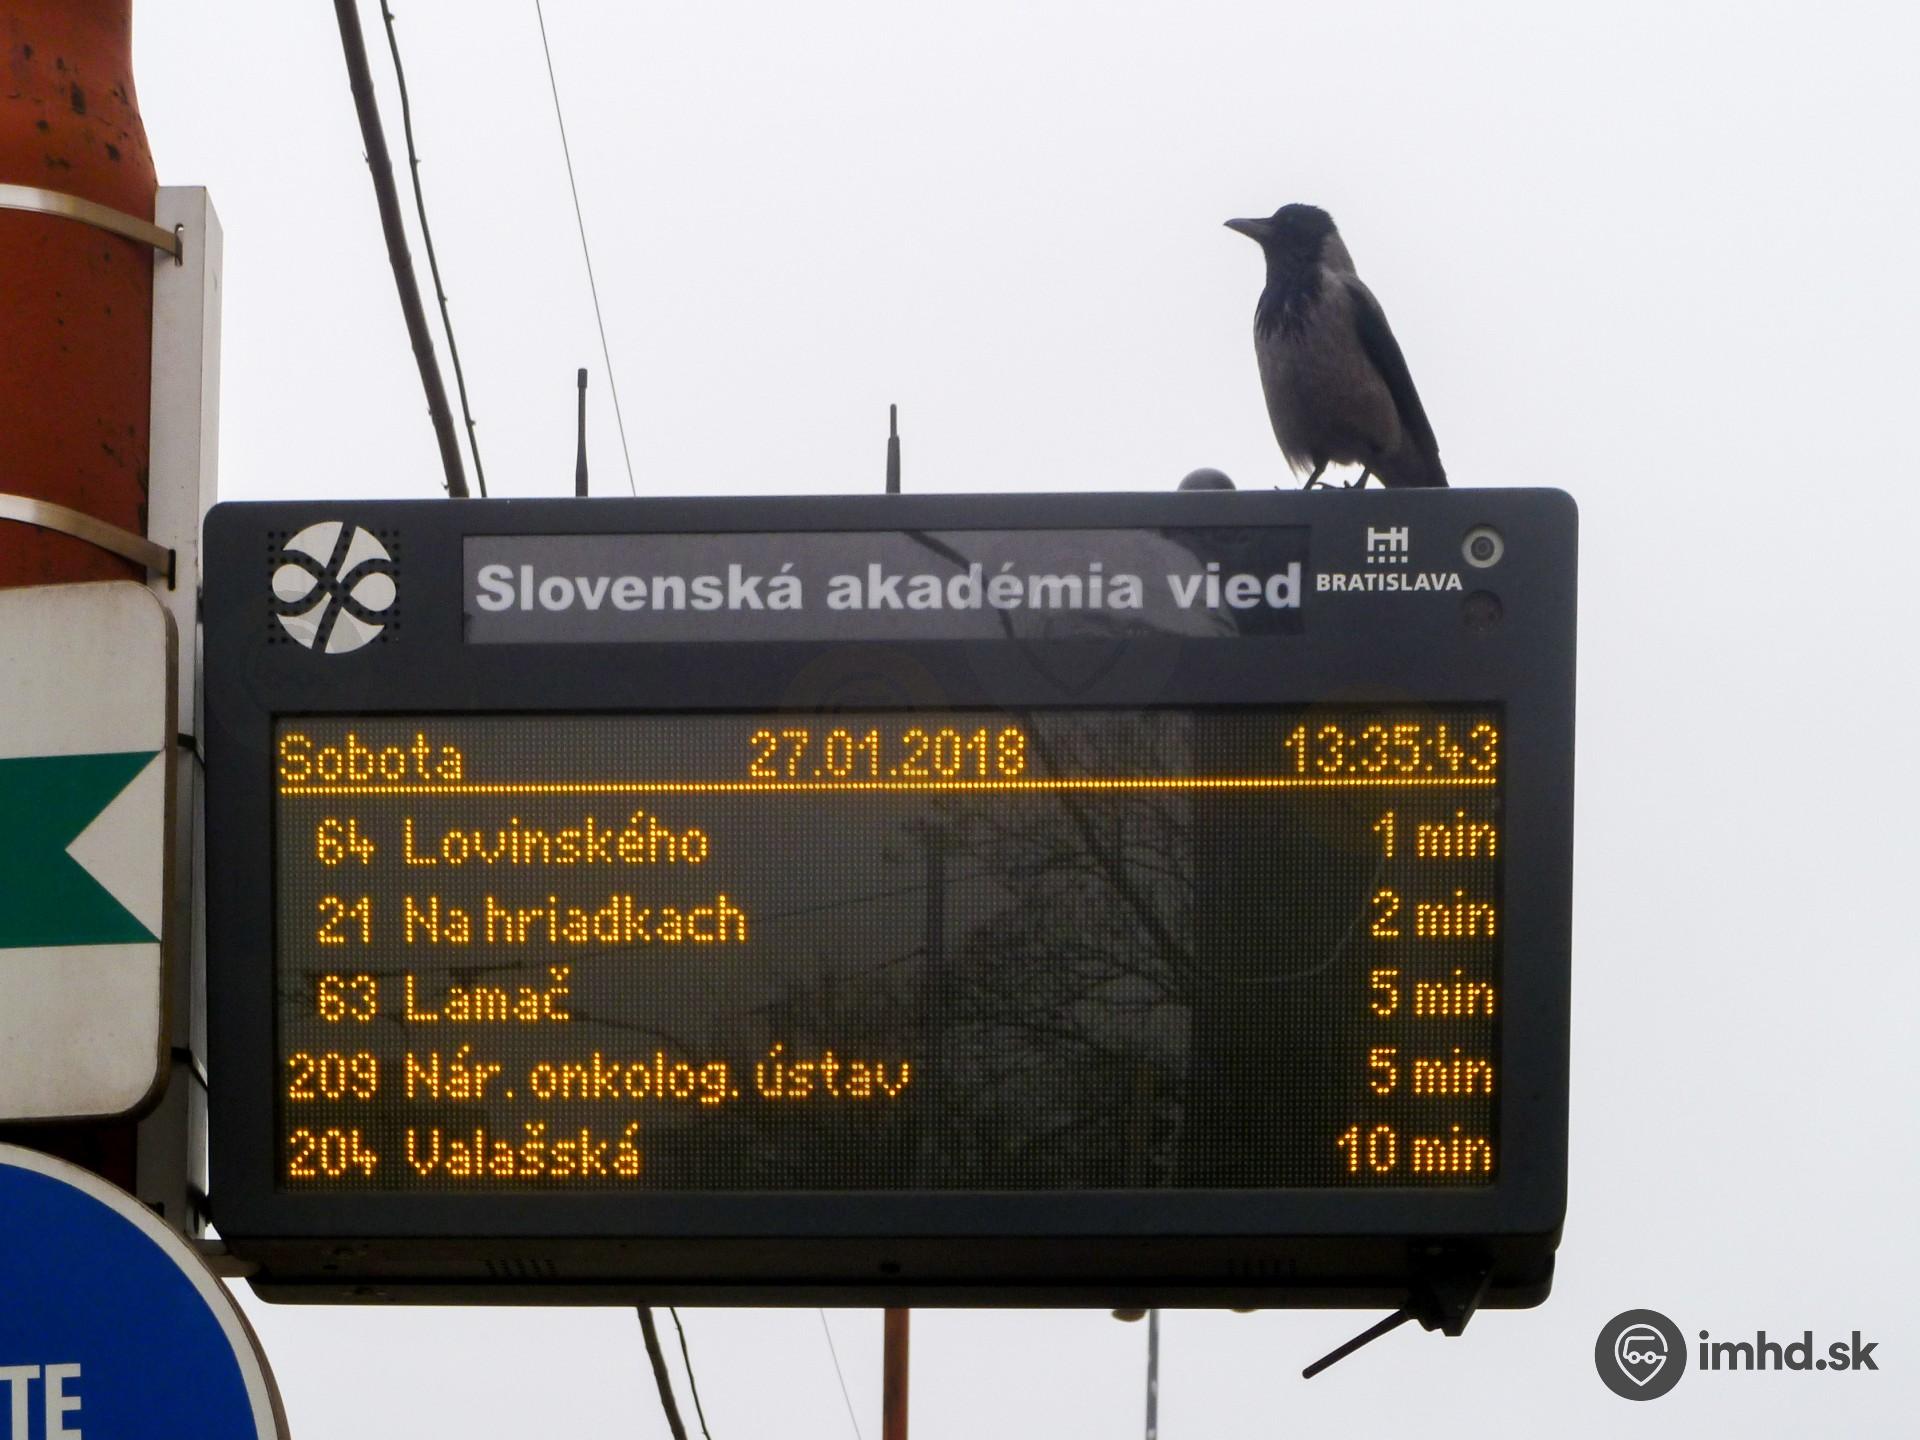 Vrana oddychuje na elektronickej tabuli na zástavke SAV